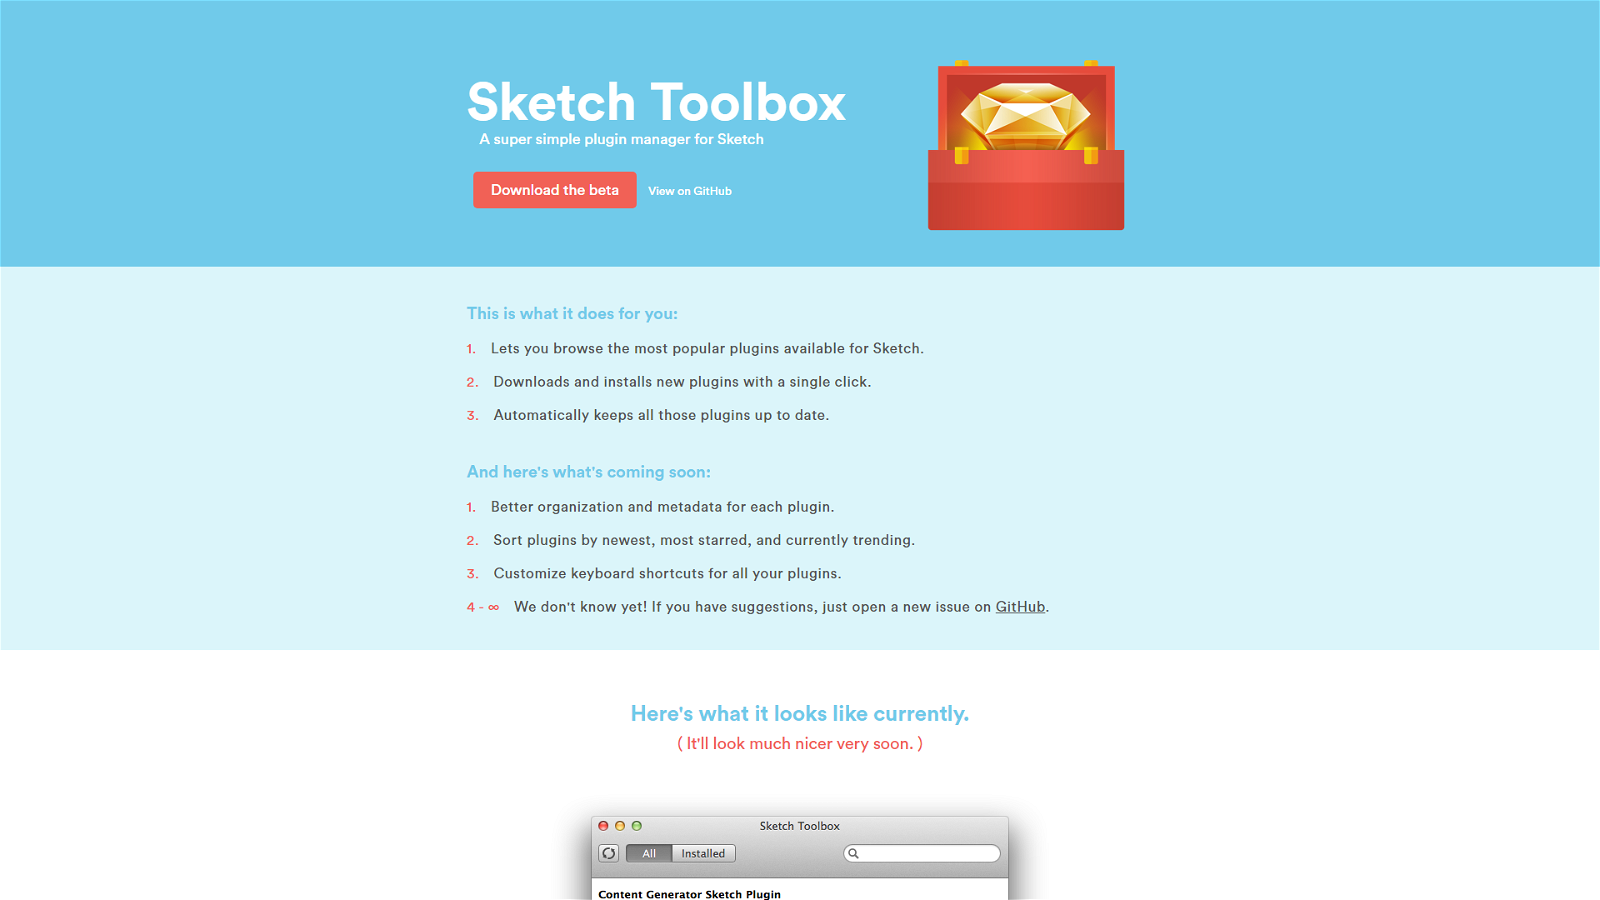 Sketch Toolbox